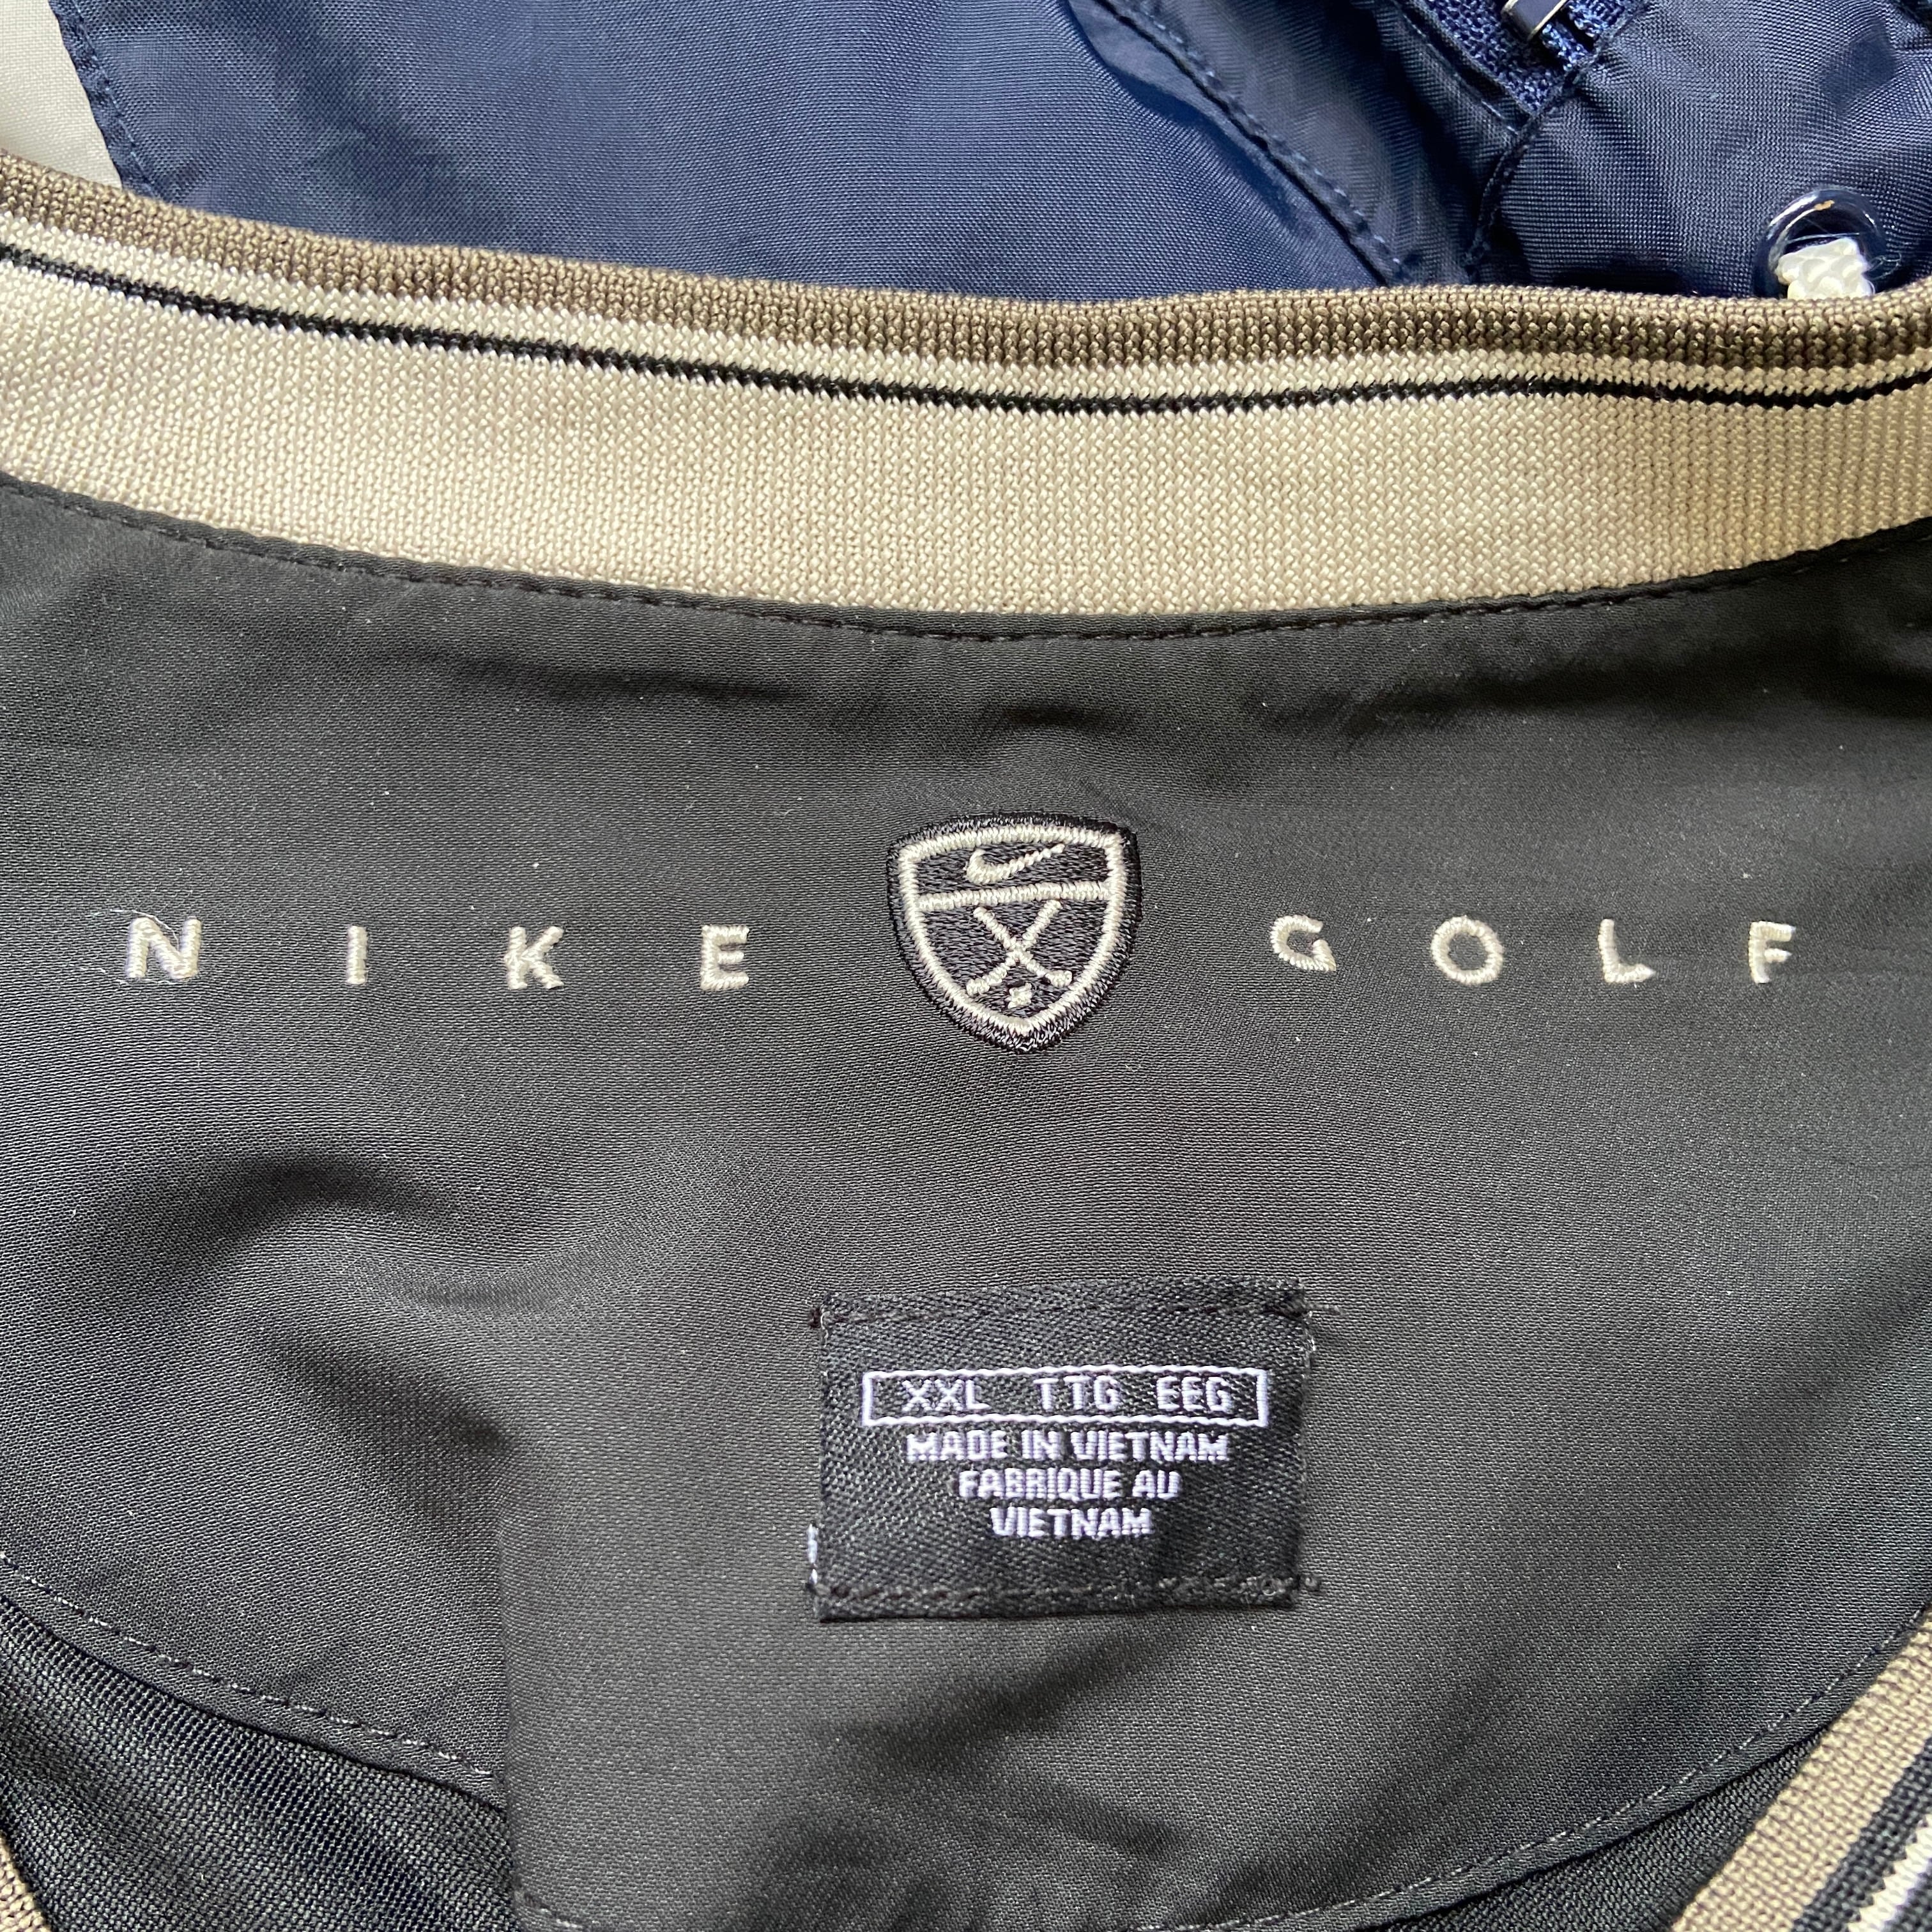 ビッグサイズ 00年代 NIKE GOLF ナイキ ゴルフ ウォームアッププル